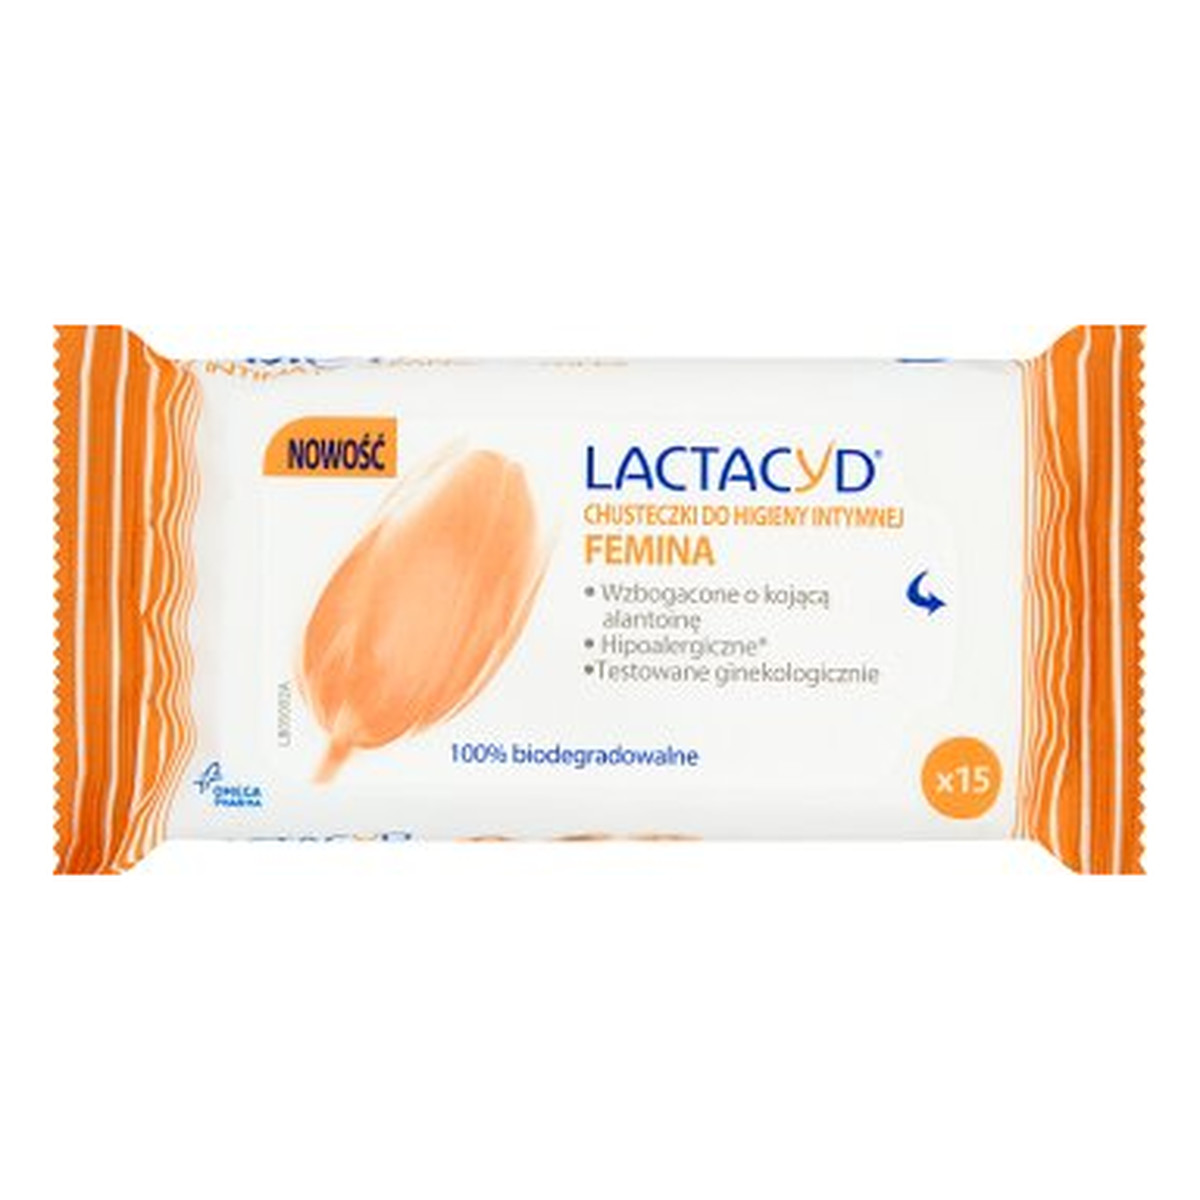 Lactacyd Femina Chusteczki Do Higieny Intymnej 15szt.